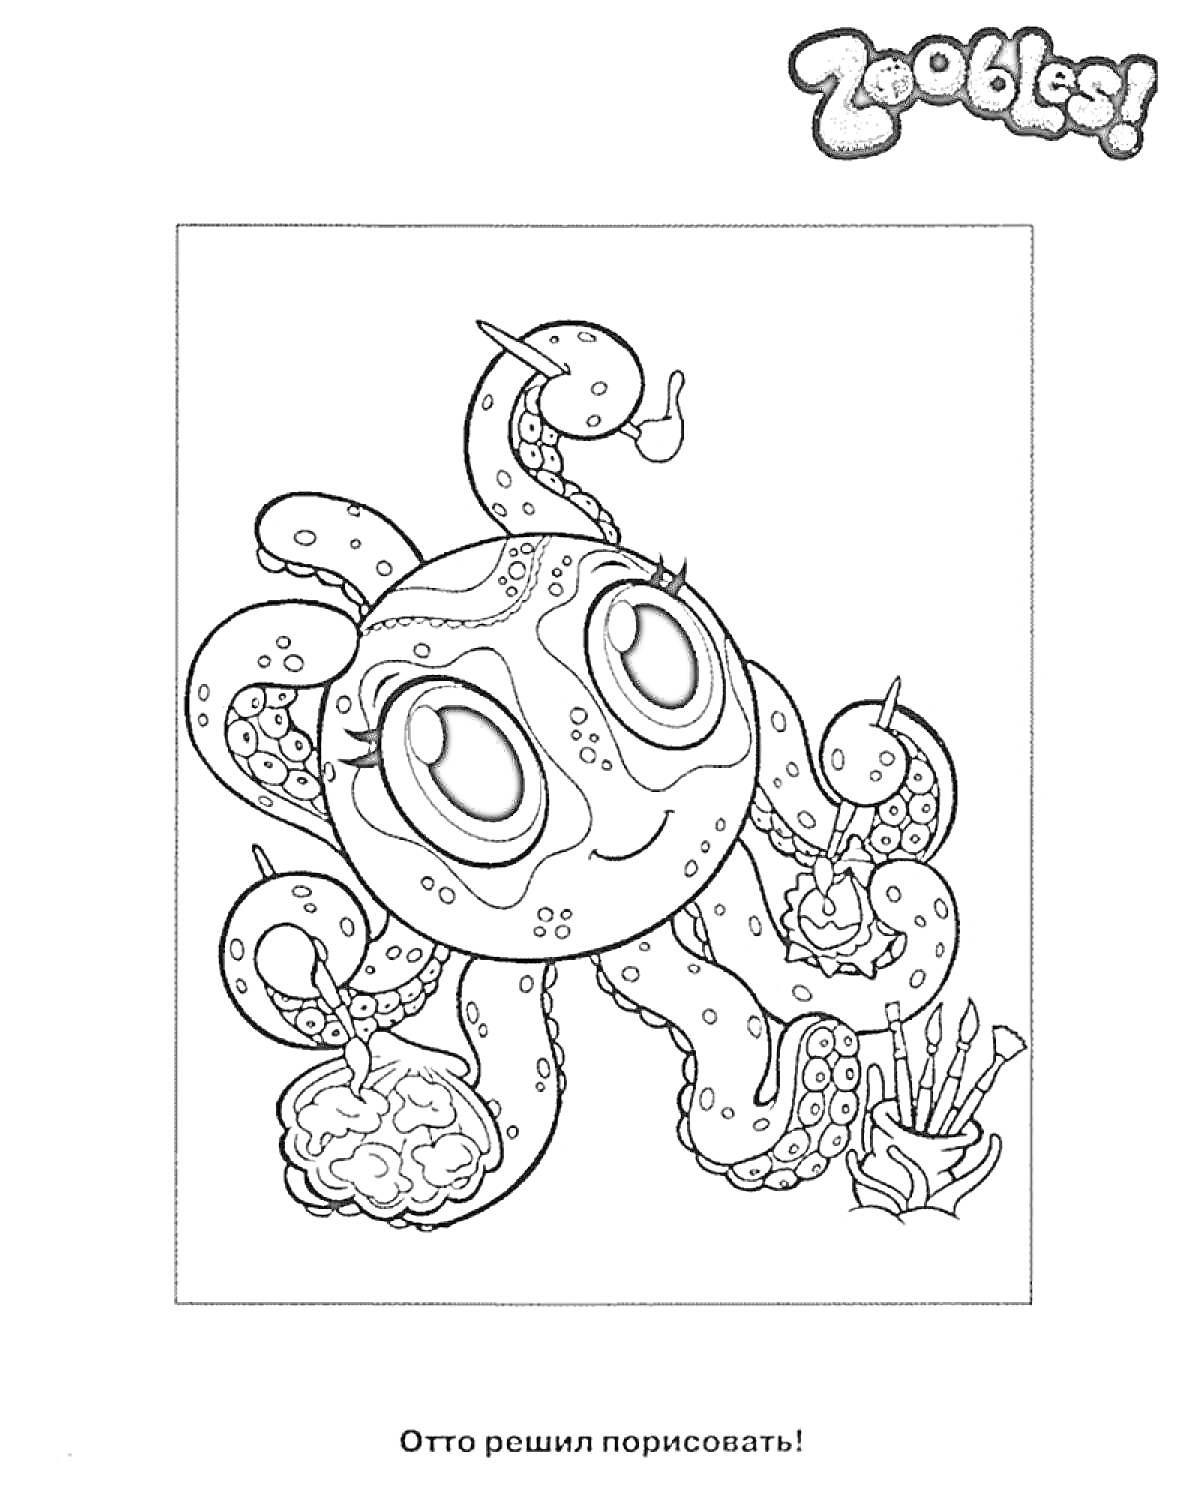 Раскраска Зублс - осьминог с рисунками, кисточками и красками